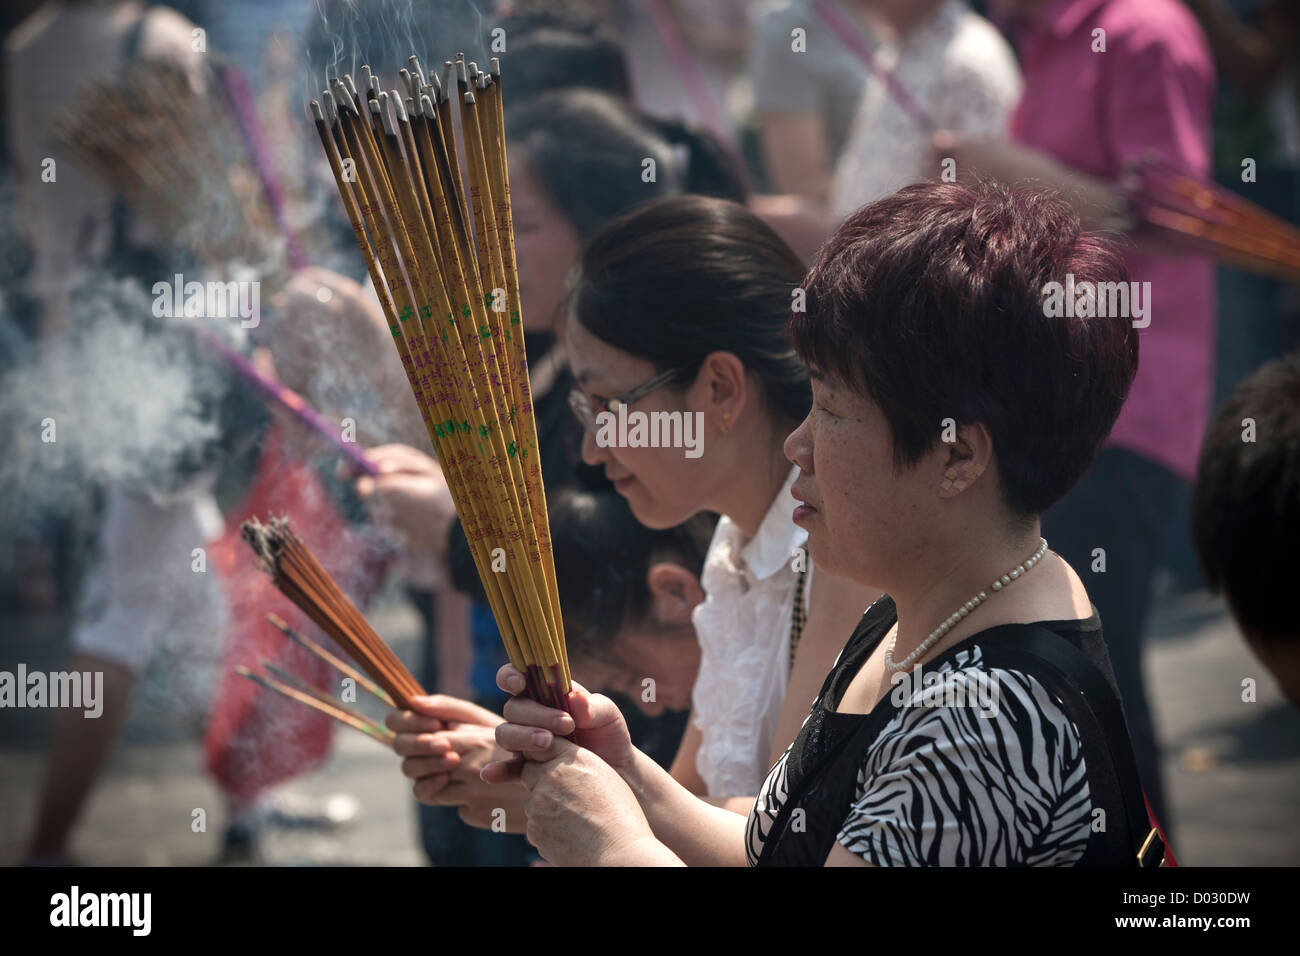 Donne brucia incenso prima di pregare presso le porte del tempio Lama a Pechino in Cina. Foto Stock